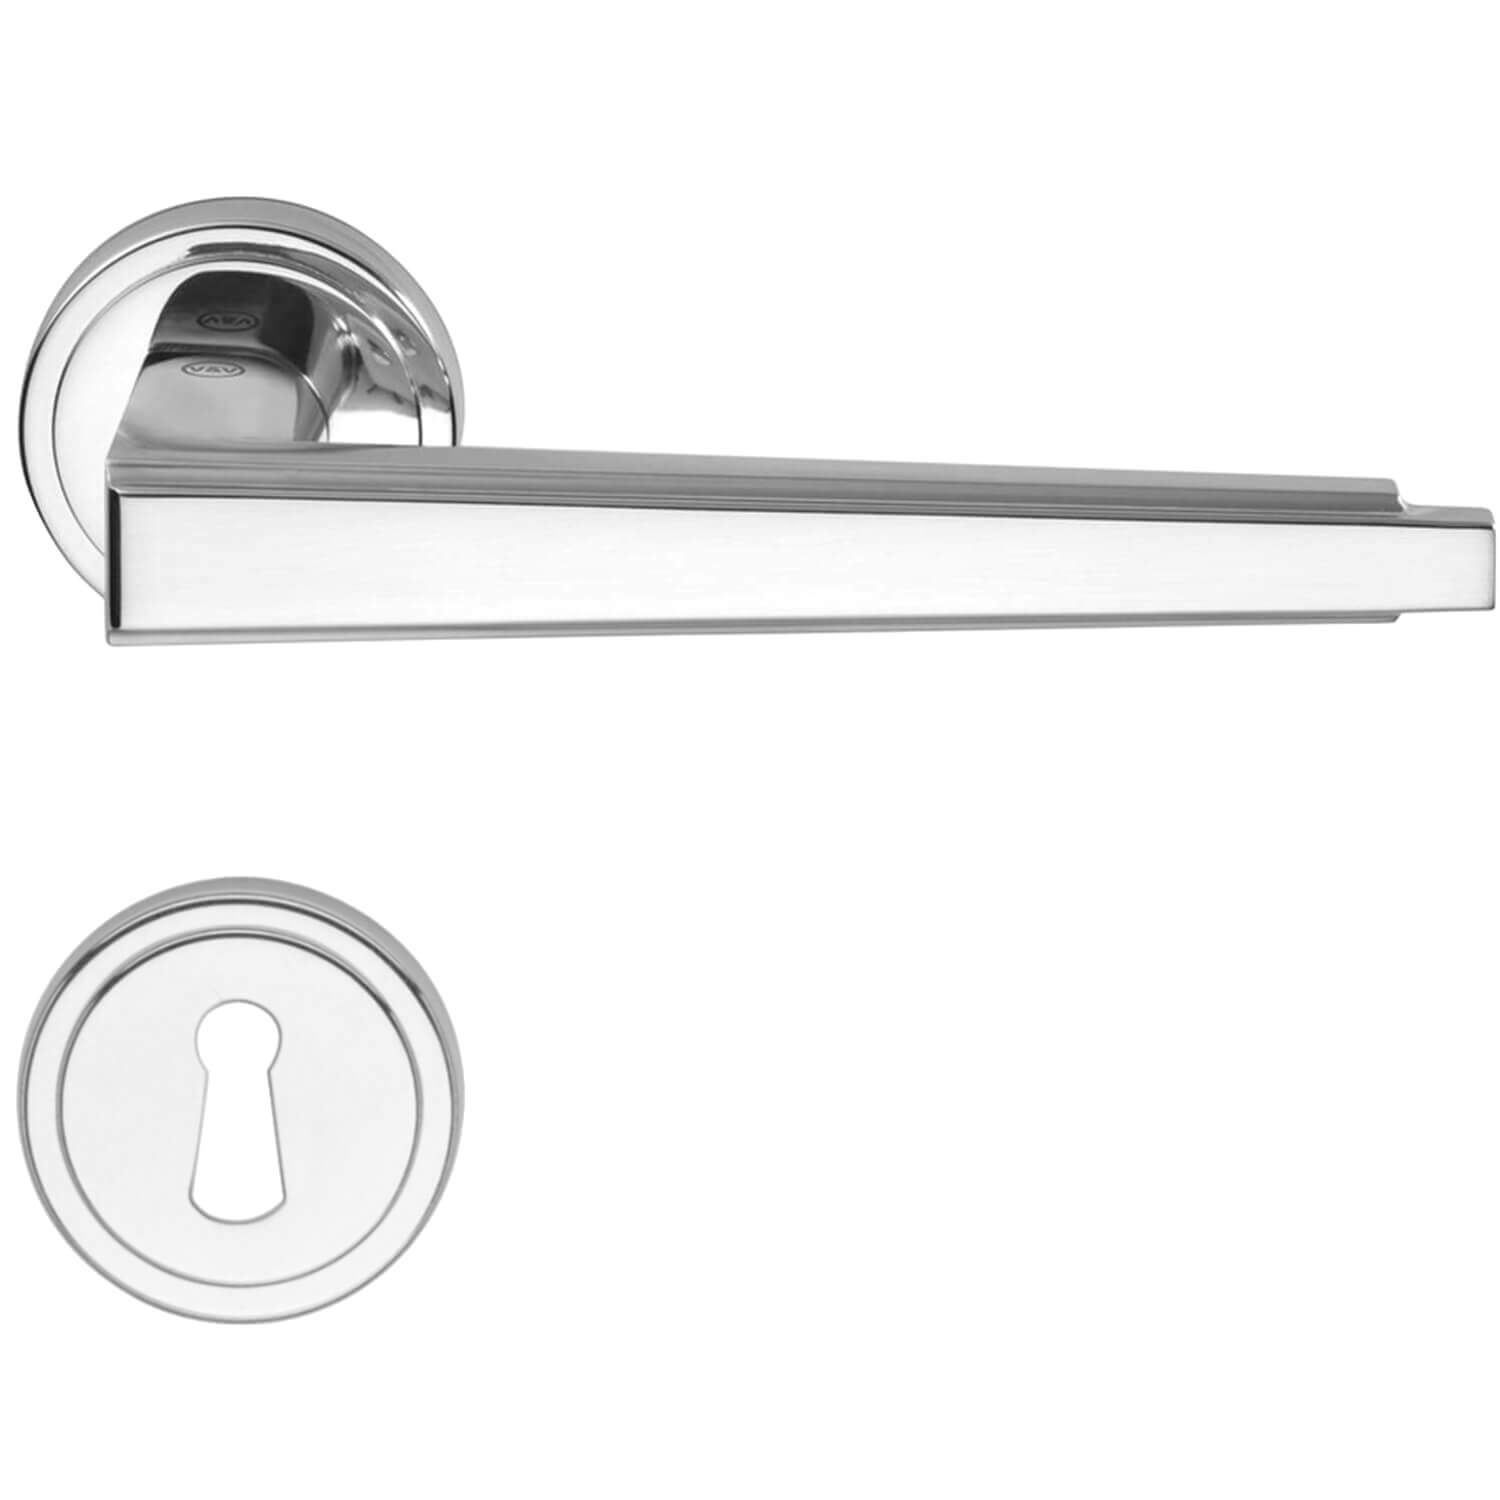 Türgriff - Innen - Rückplatte mit Schlüsselloch - Nickel poliert - MEDICI -  Chrom und Nickel Türgriffe - VillaHus